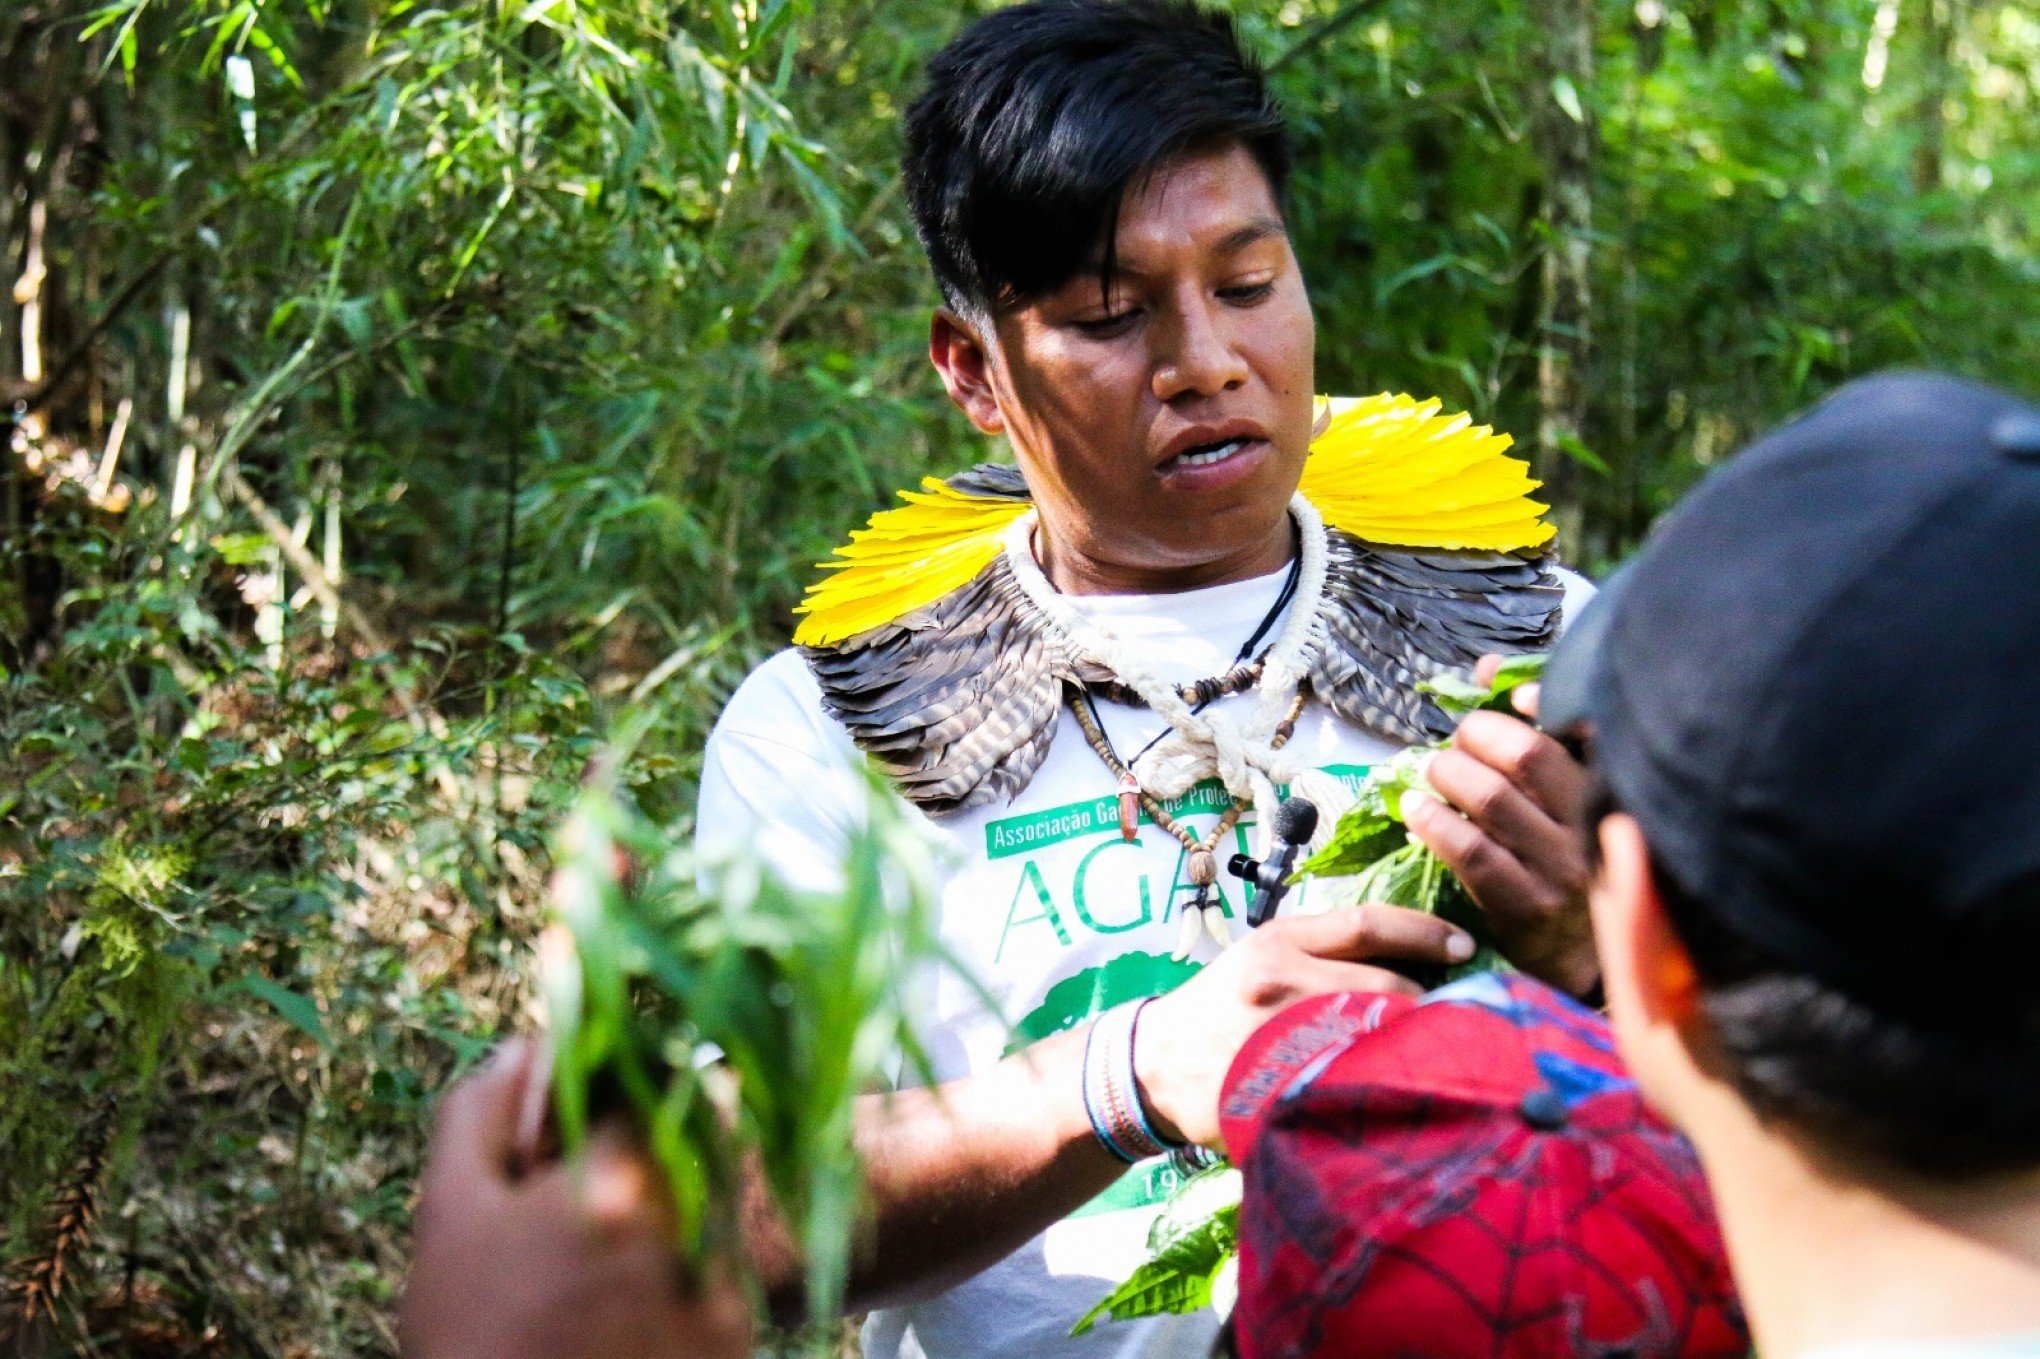 Em comemoração ao Abril Indígena, aldeia Kaingang de Canela realiza atividades especiais